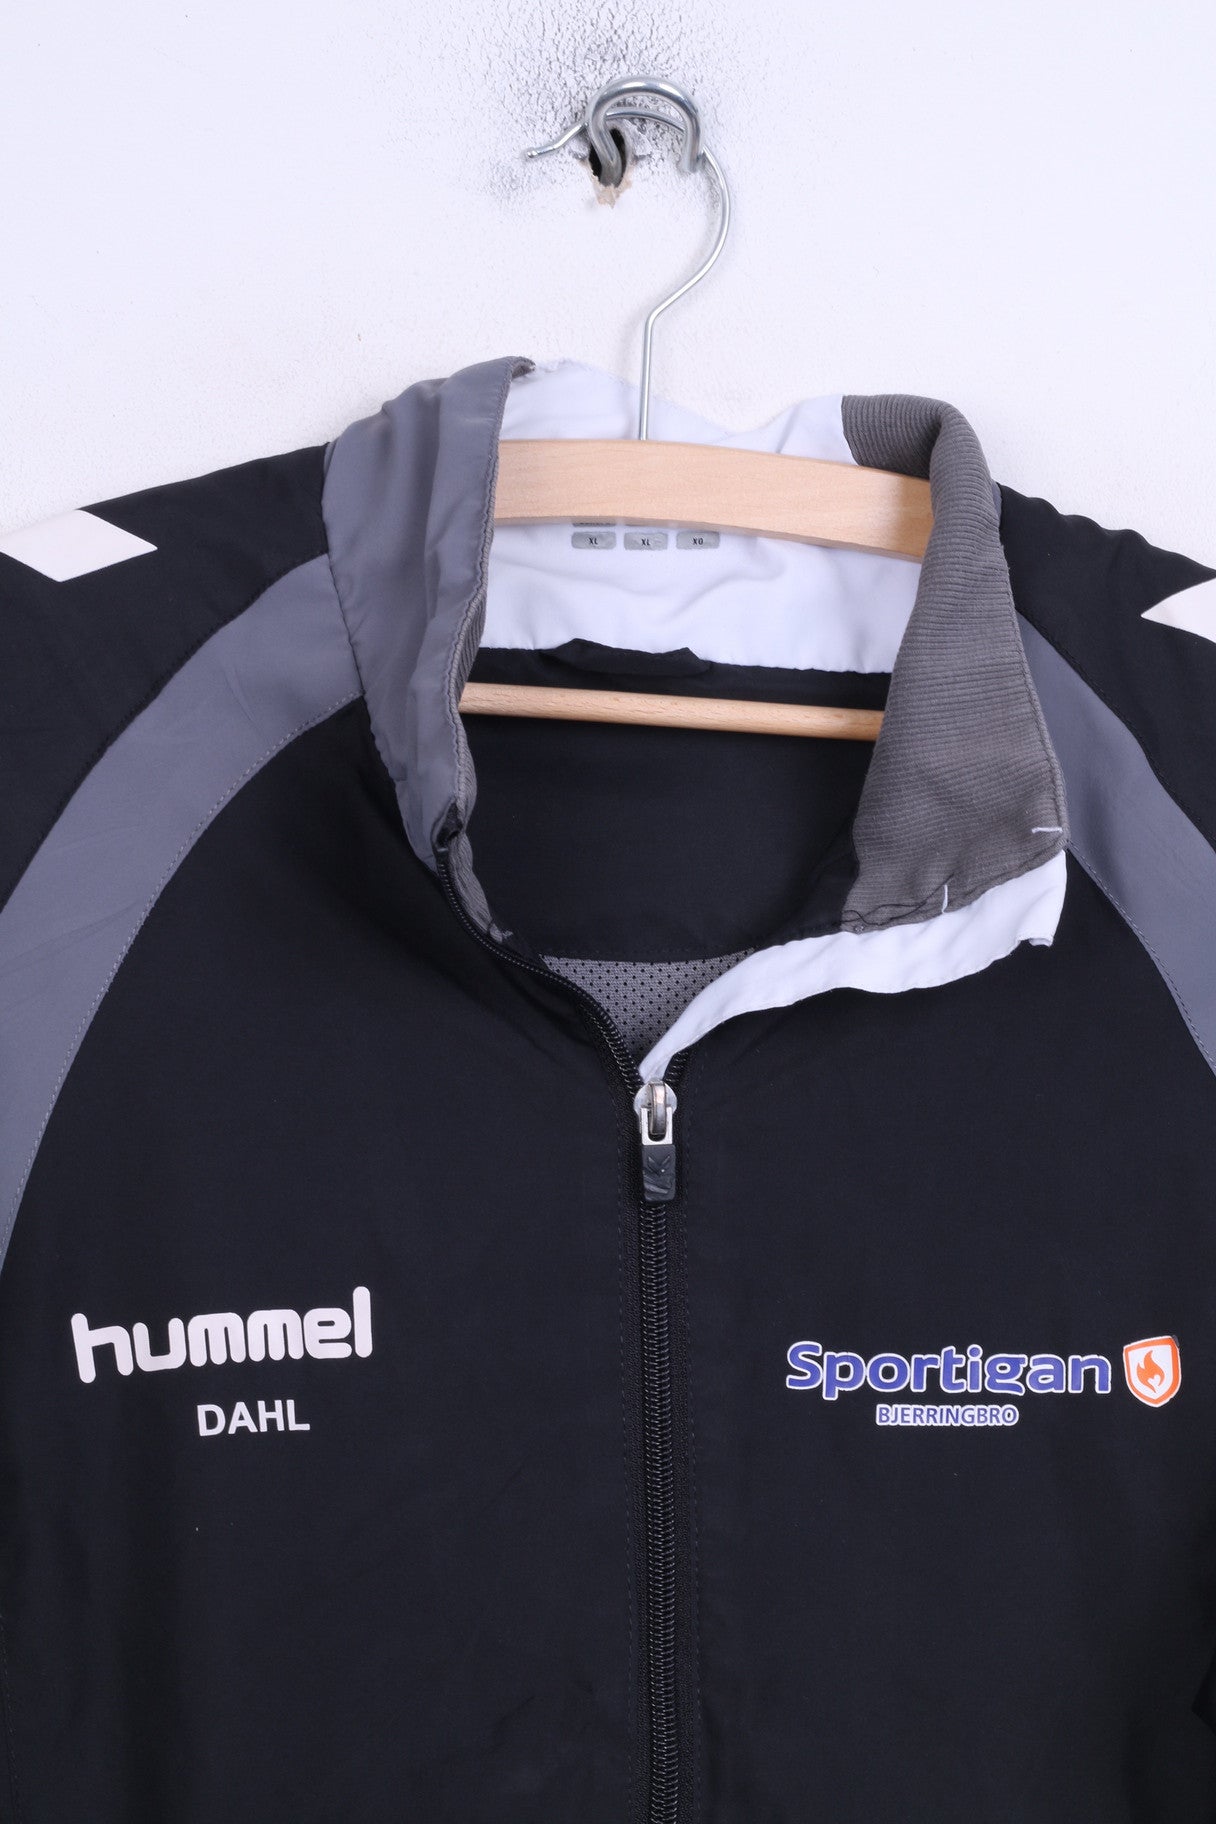 Hummel Dahl Mens XL Track Top Jacket Sport Black Sportigan Bjerringbro